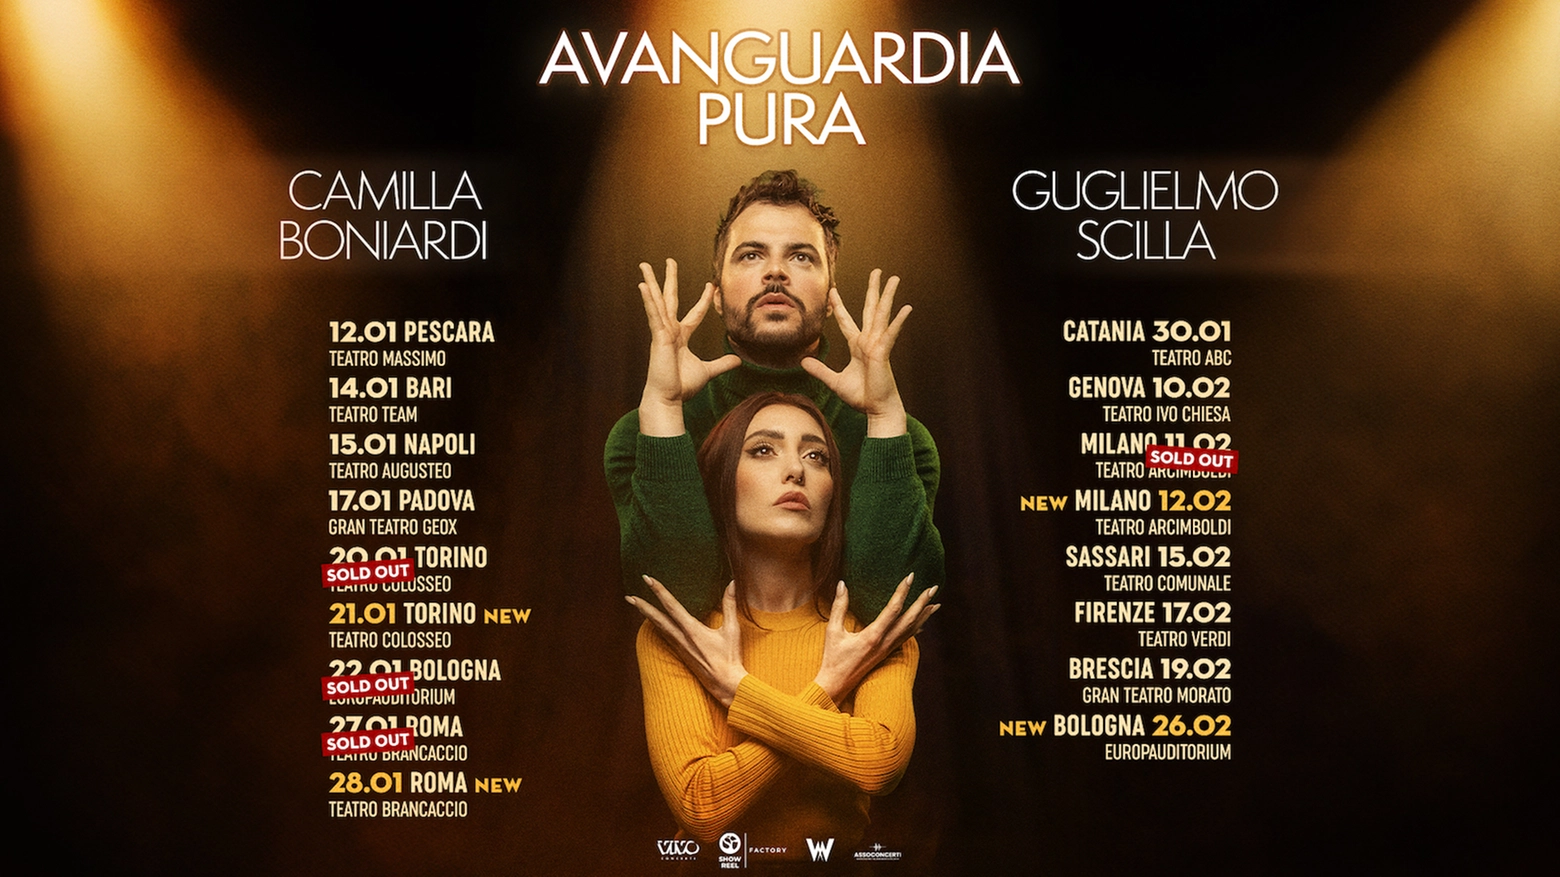 Il tour di ‘Avanguardia pura’ prenderà il via il 12 gennaio 2025 da Pescara e li porterà in giro per l’Italia